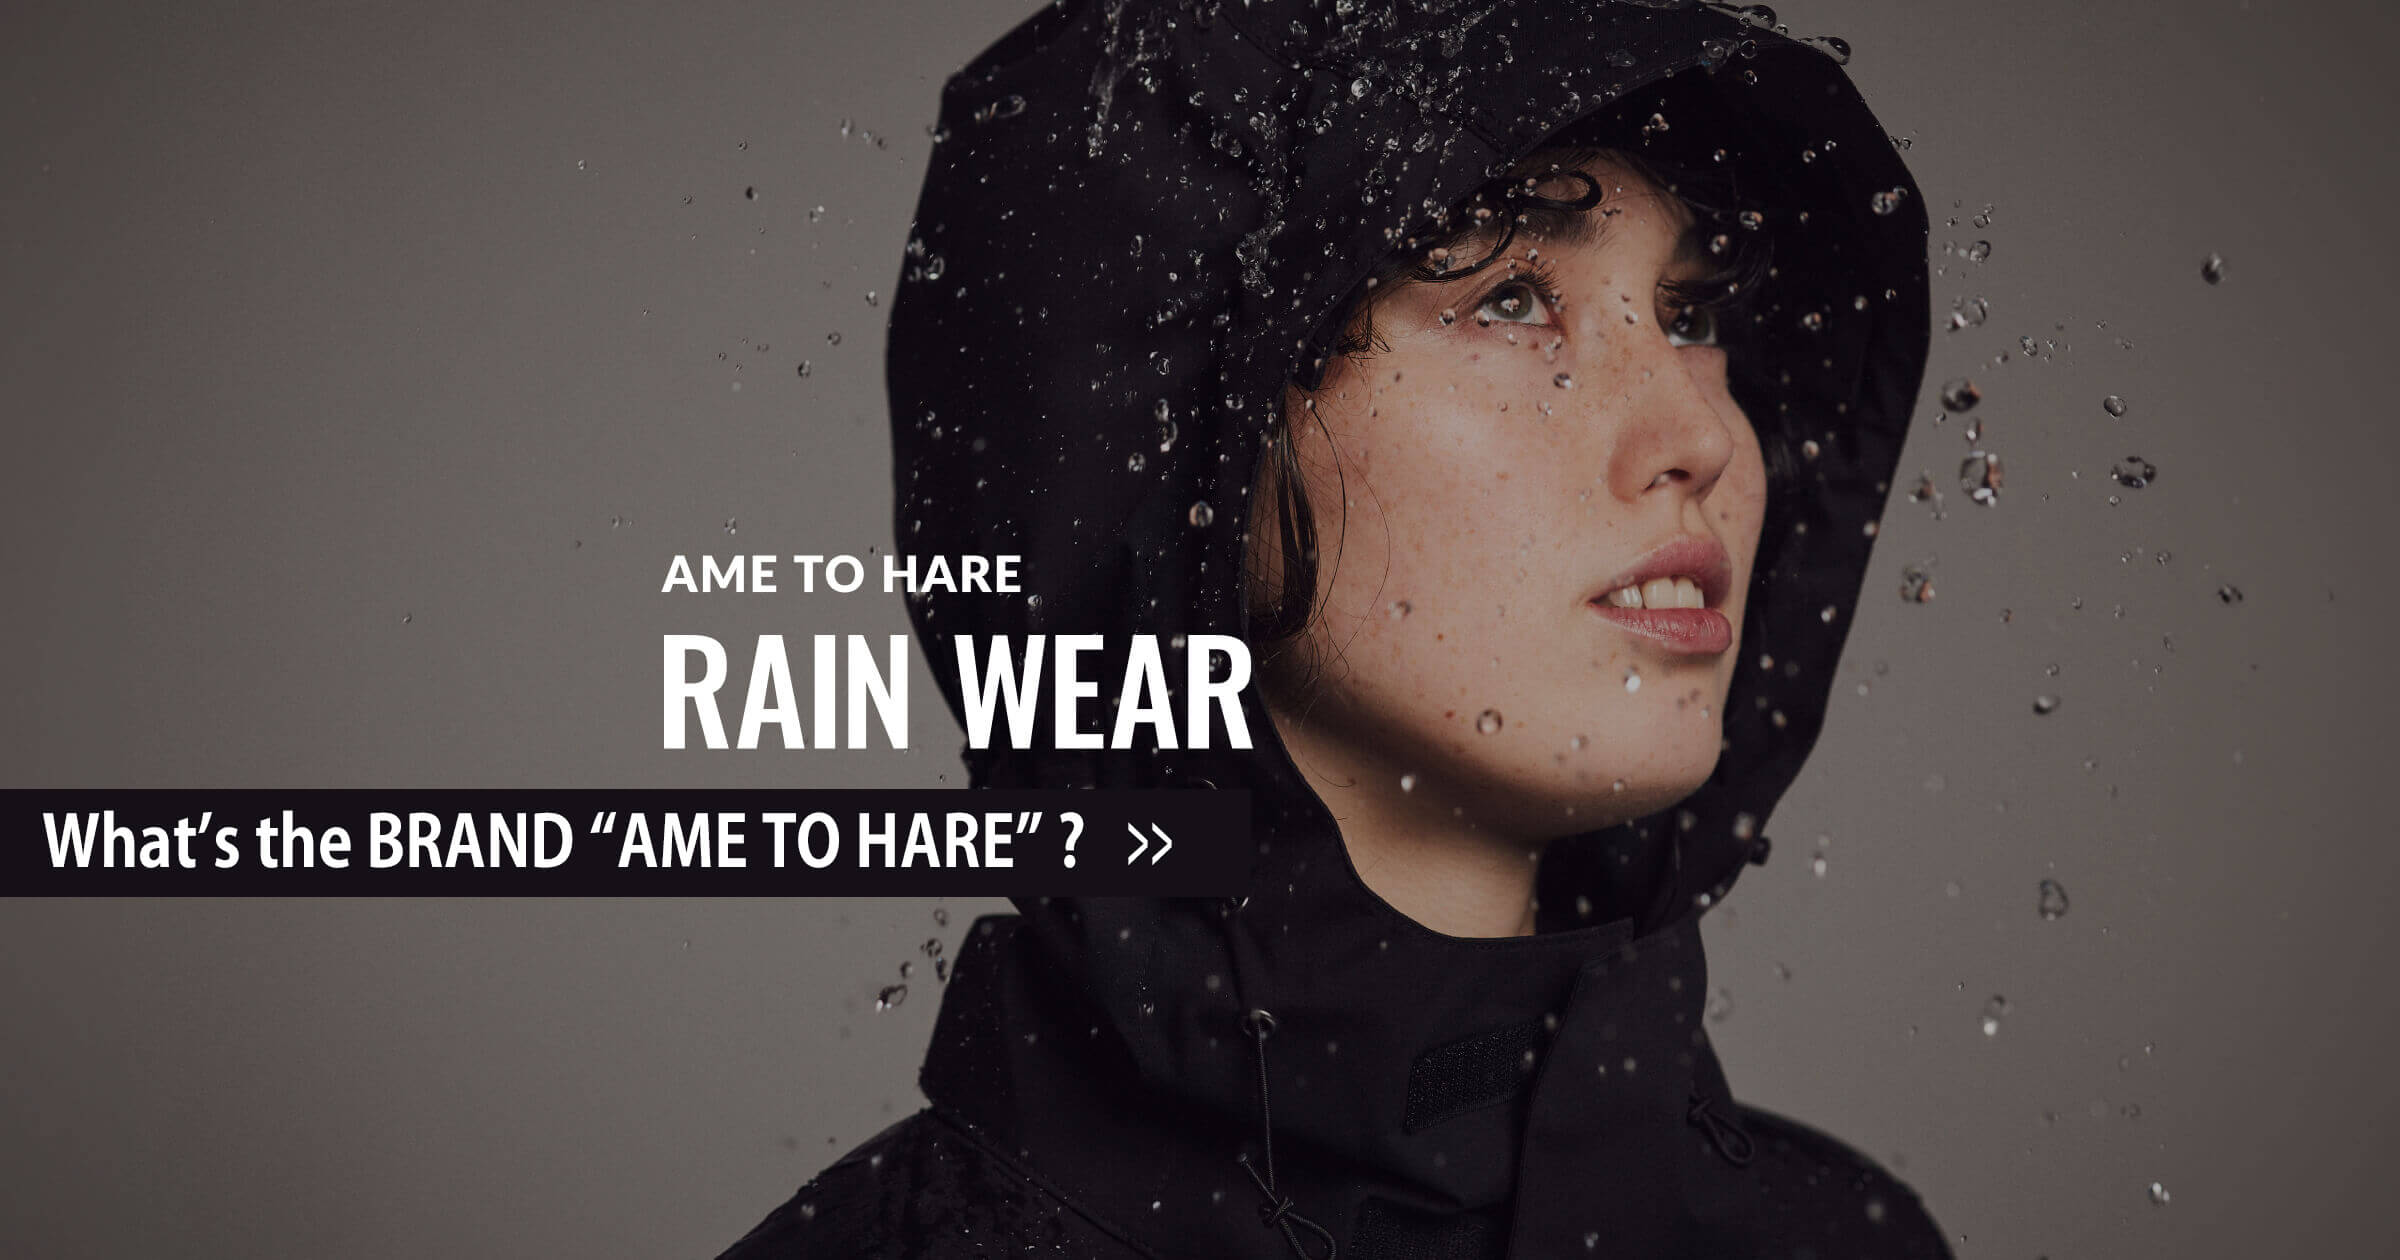 AME TO HARE - RAIN WEAR『雨を遊ぶ本格派、上がる街着へ。』- アメトハレ ブランド紹介 雨対策商品ラインナップ